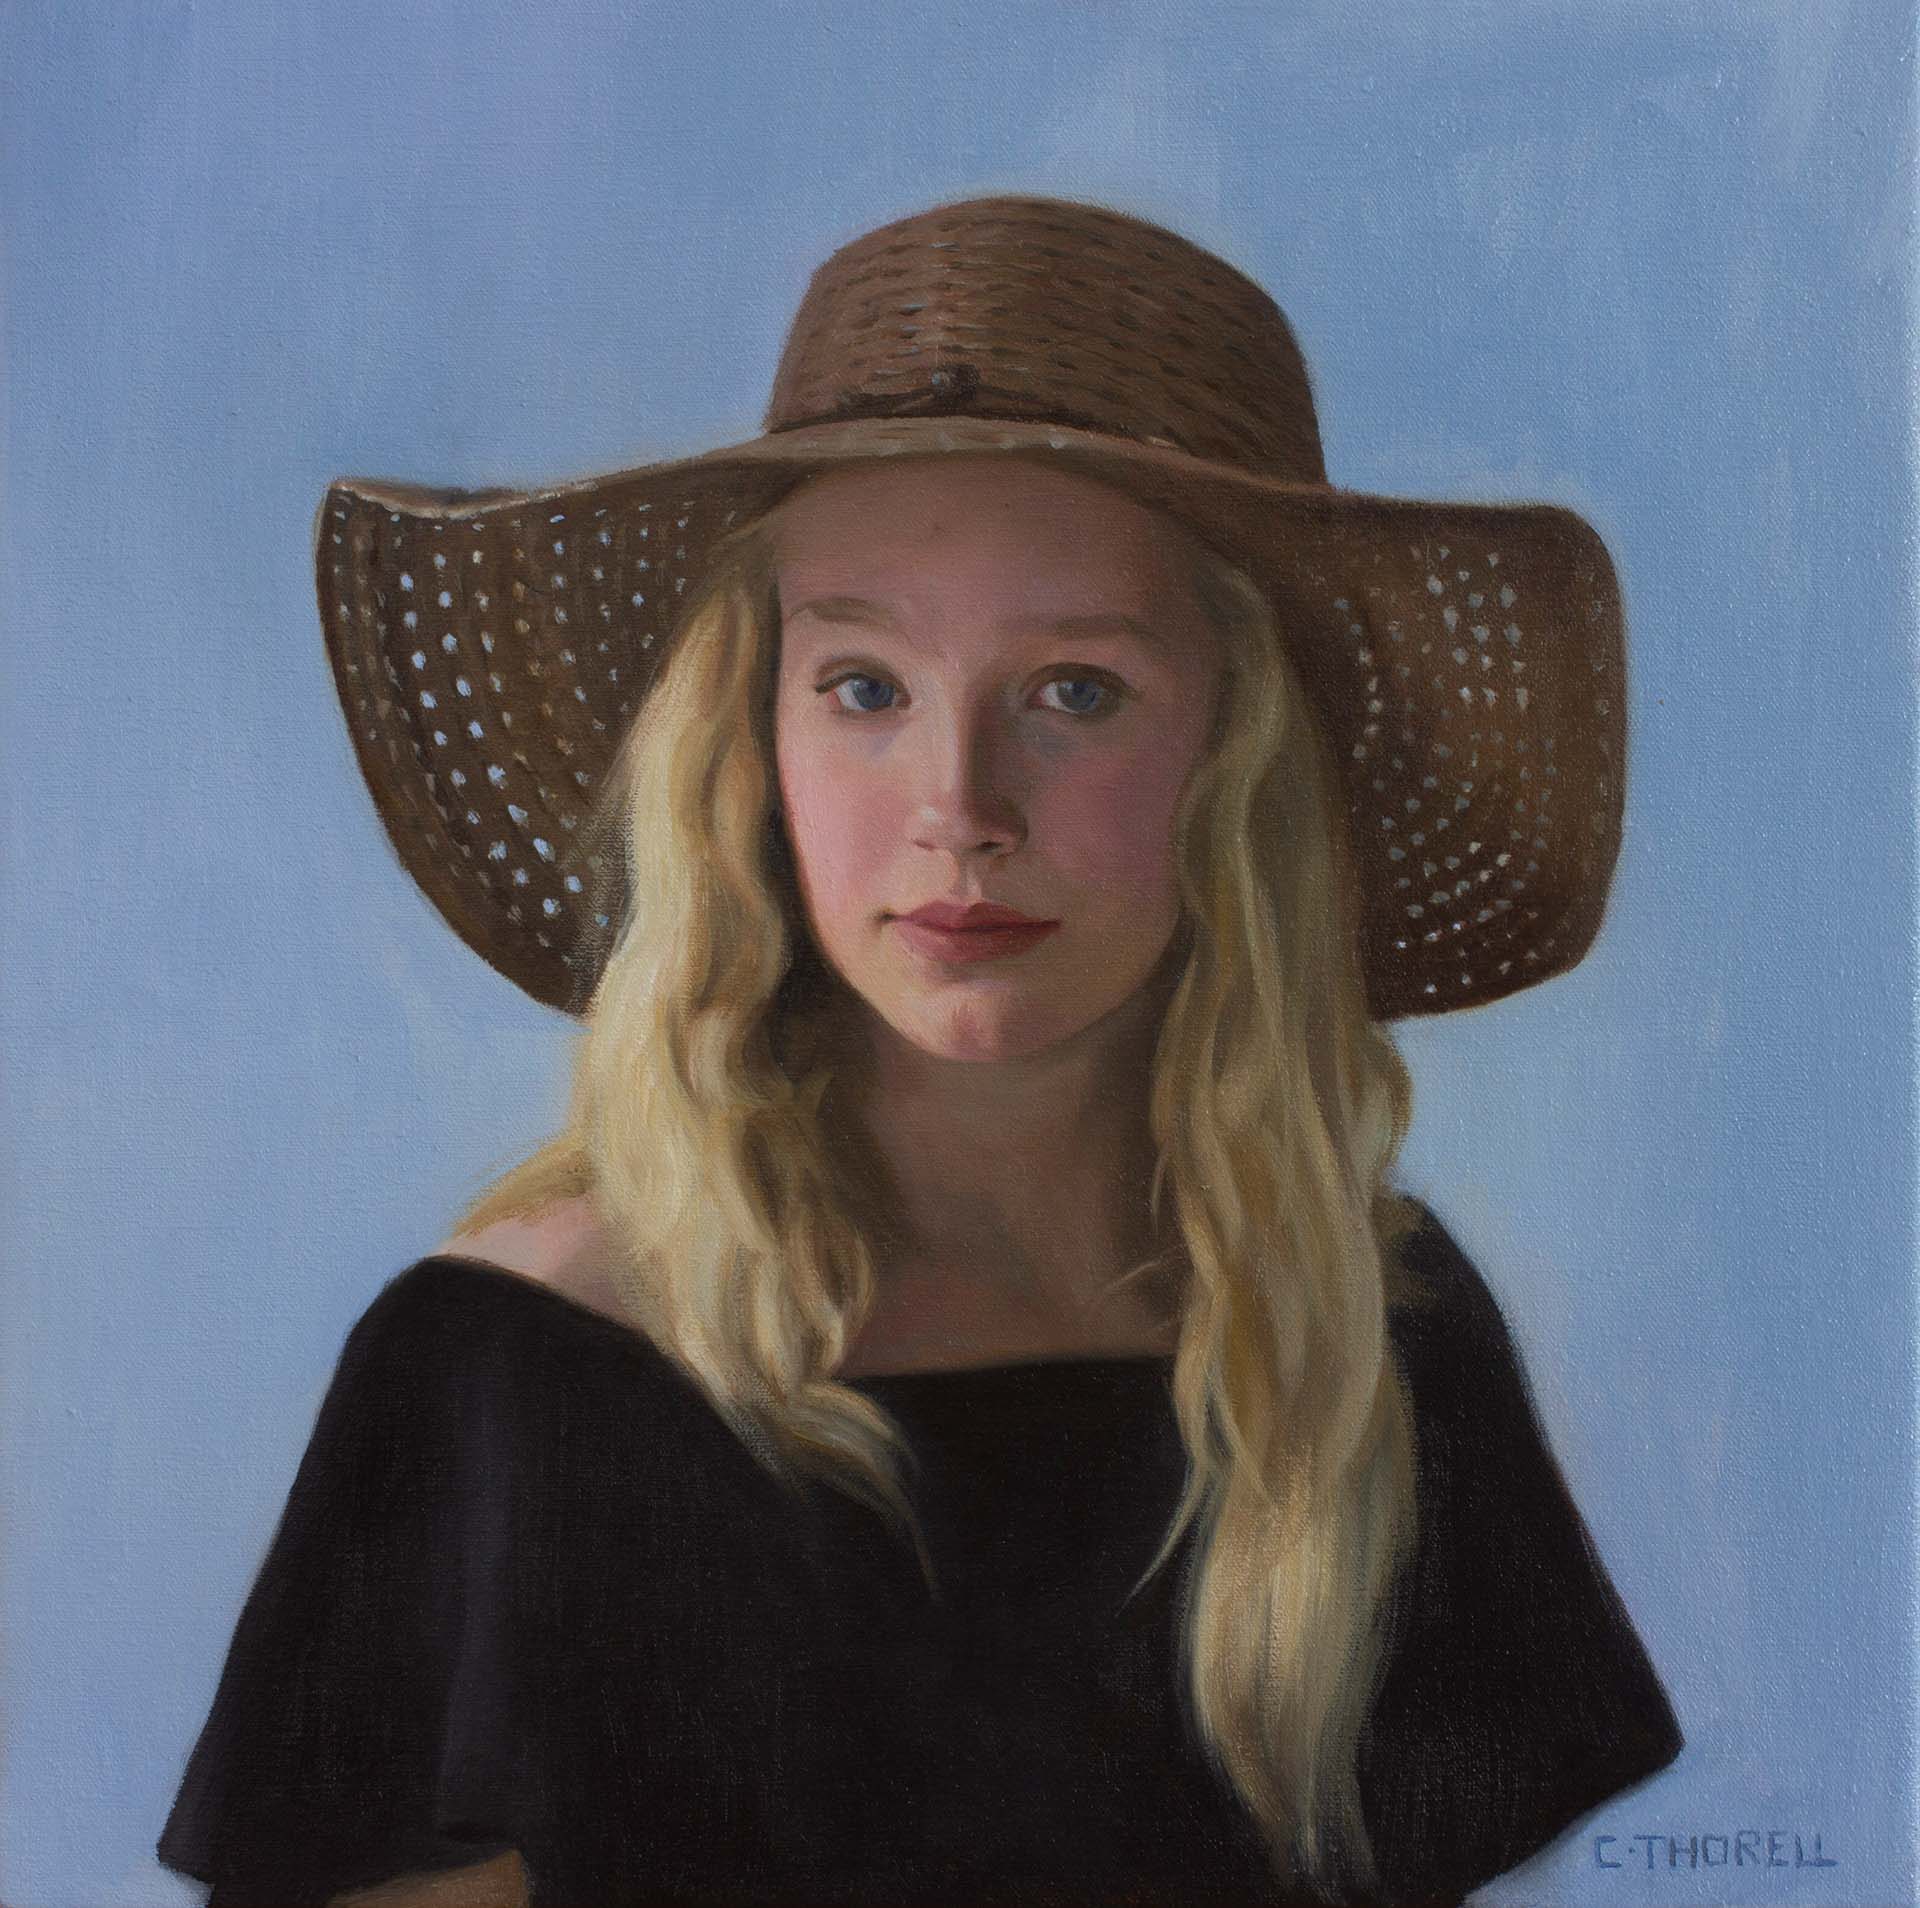 Cecilia Thorell DeVore, Molly, Oil on linen, 35 x 35 cm, 2019